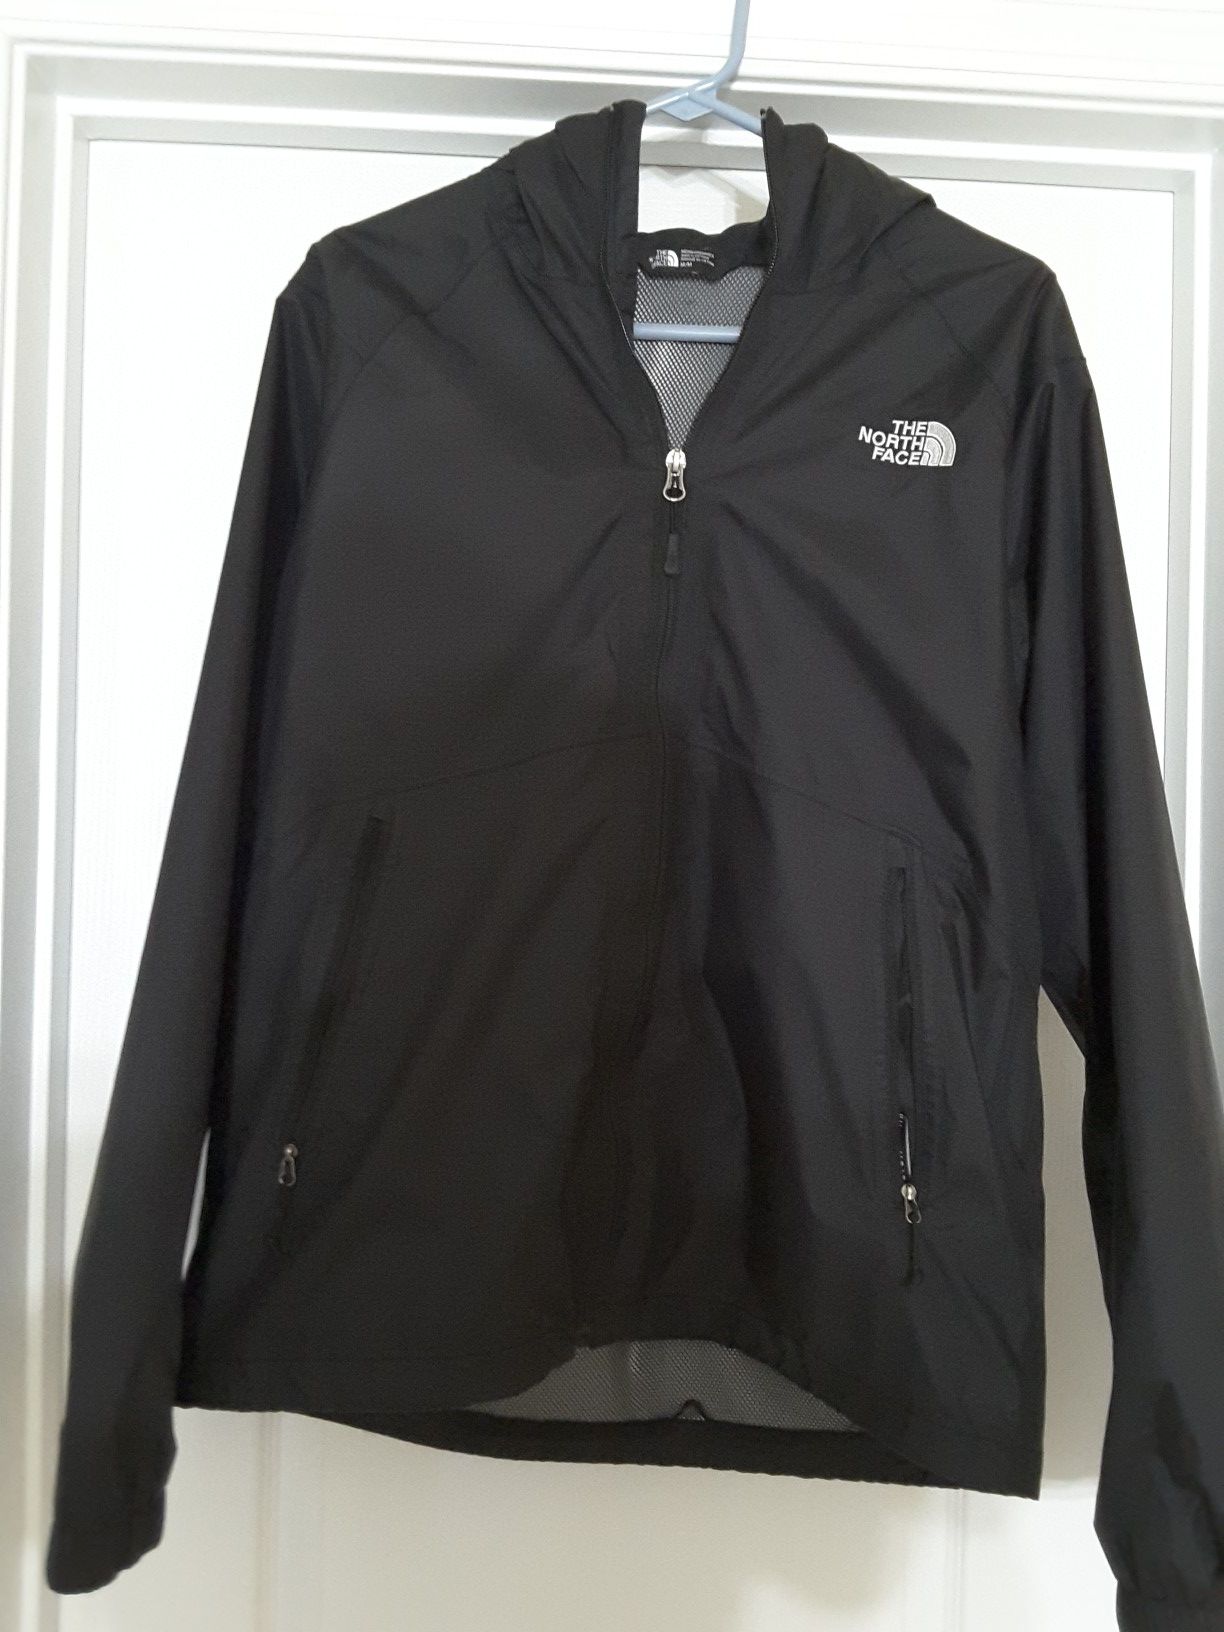 Men's medium North Face rain jacket.